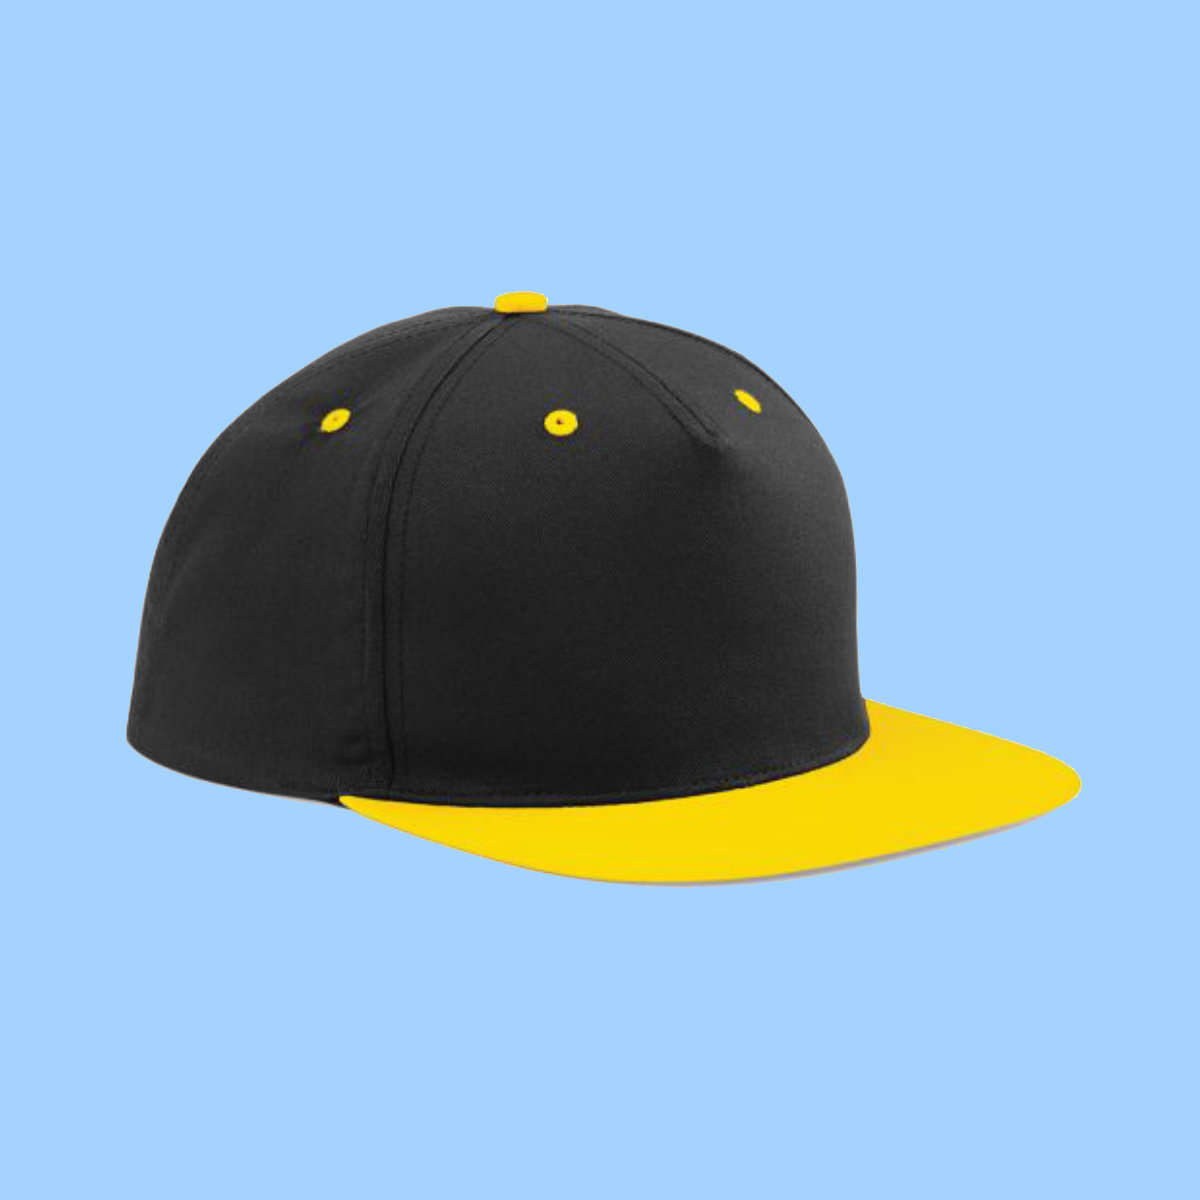 hat11